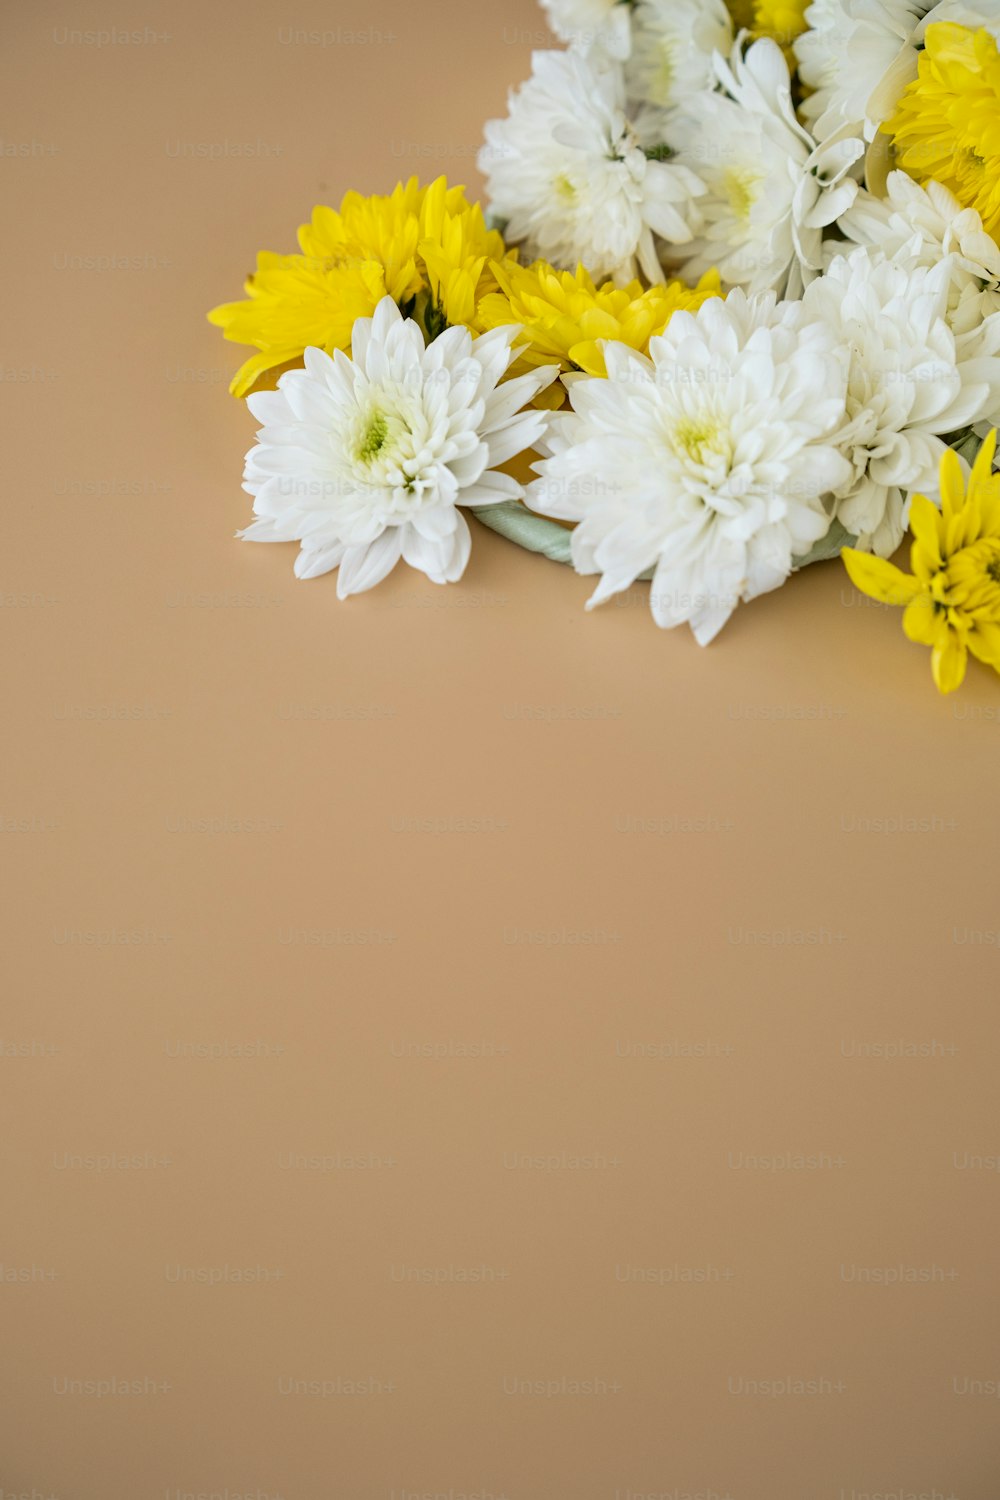 테이블에 흰색과 노란색 꽃의 무리